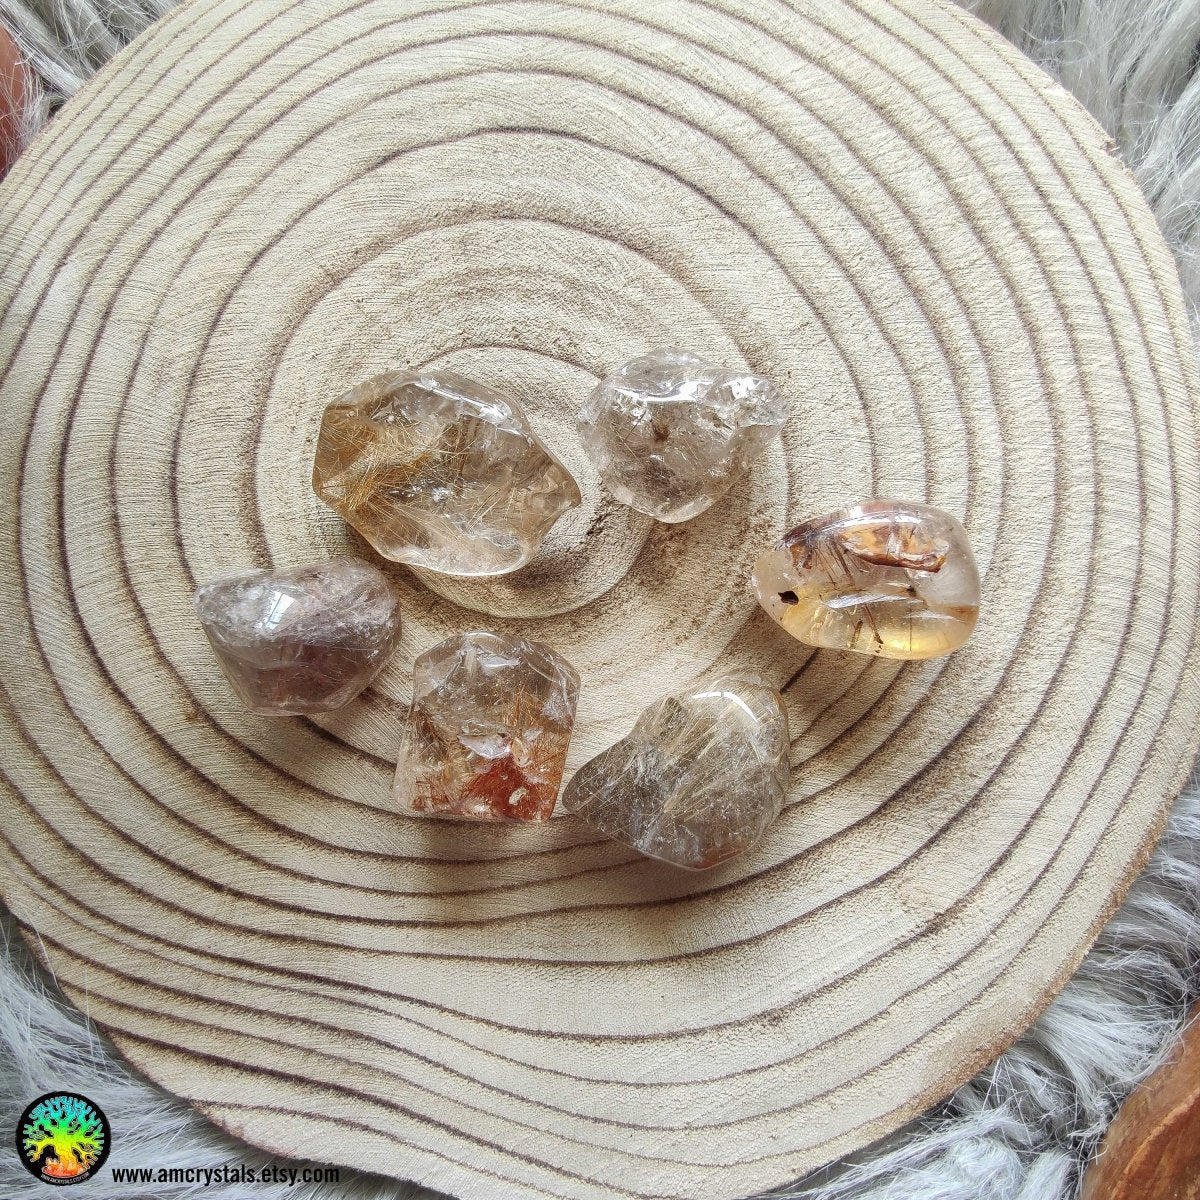 Getrommelter Taschenstein aus Rutilquarz – Anima Mundi-Kristalle